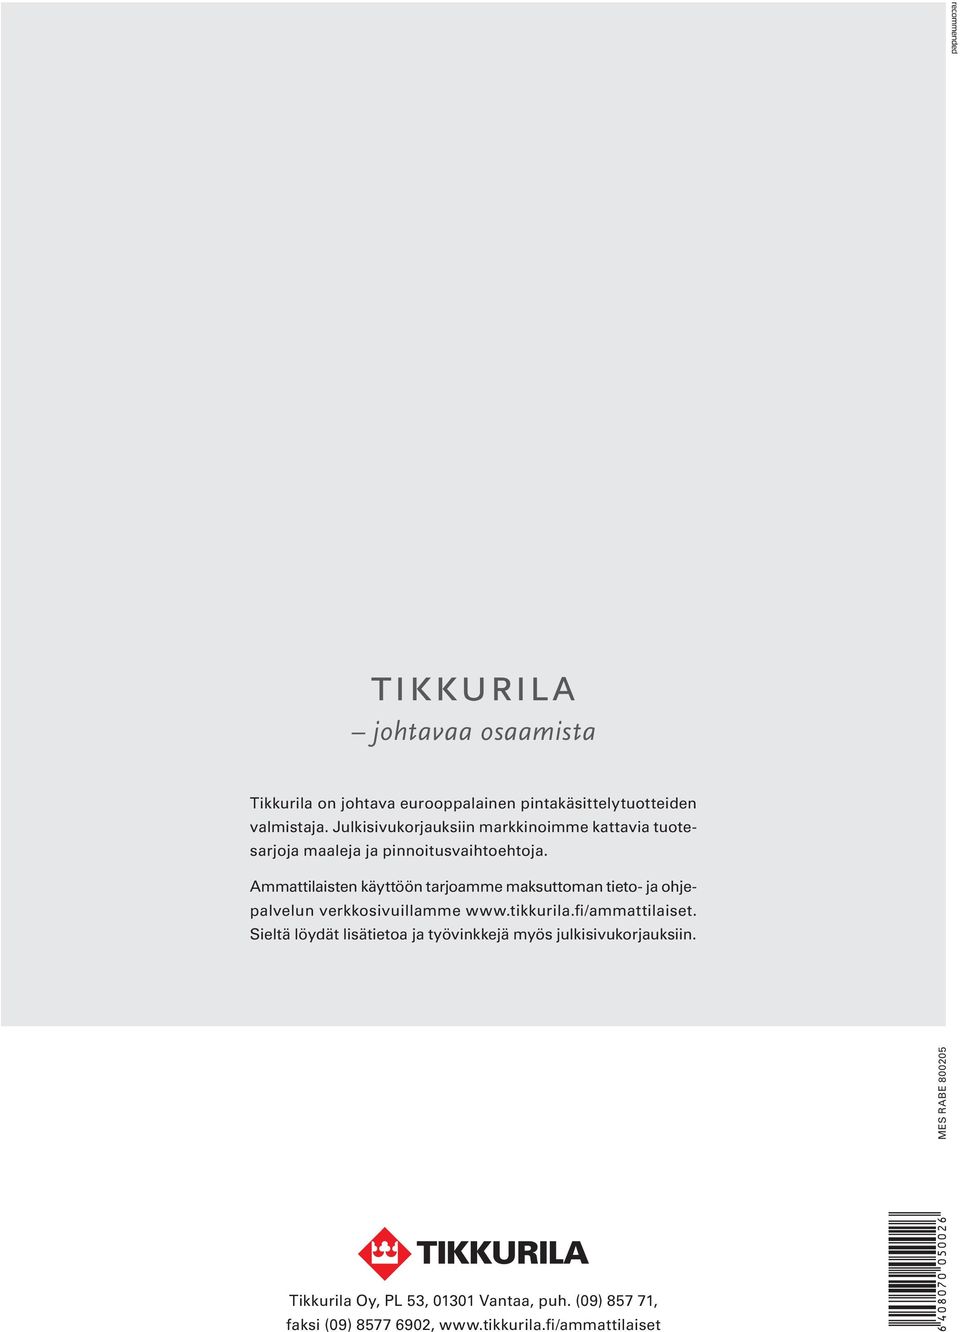 Ammattilaisten käyttöön tarjoamme maksuttoman tieto- ja ohjepalvelun verkkosivuillamme www.tikkurila.fi/ammattilaiset.